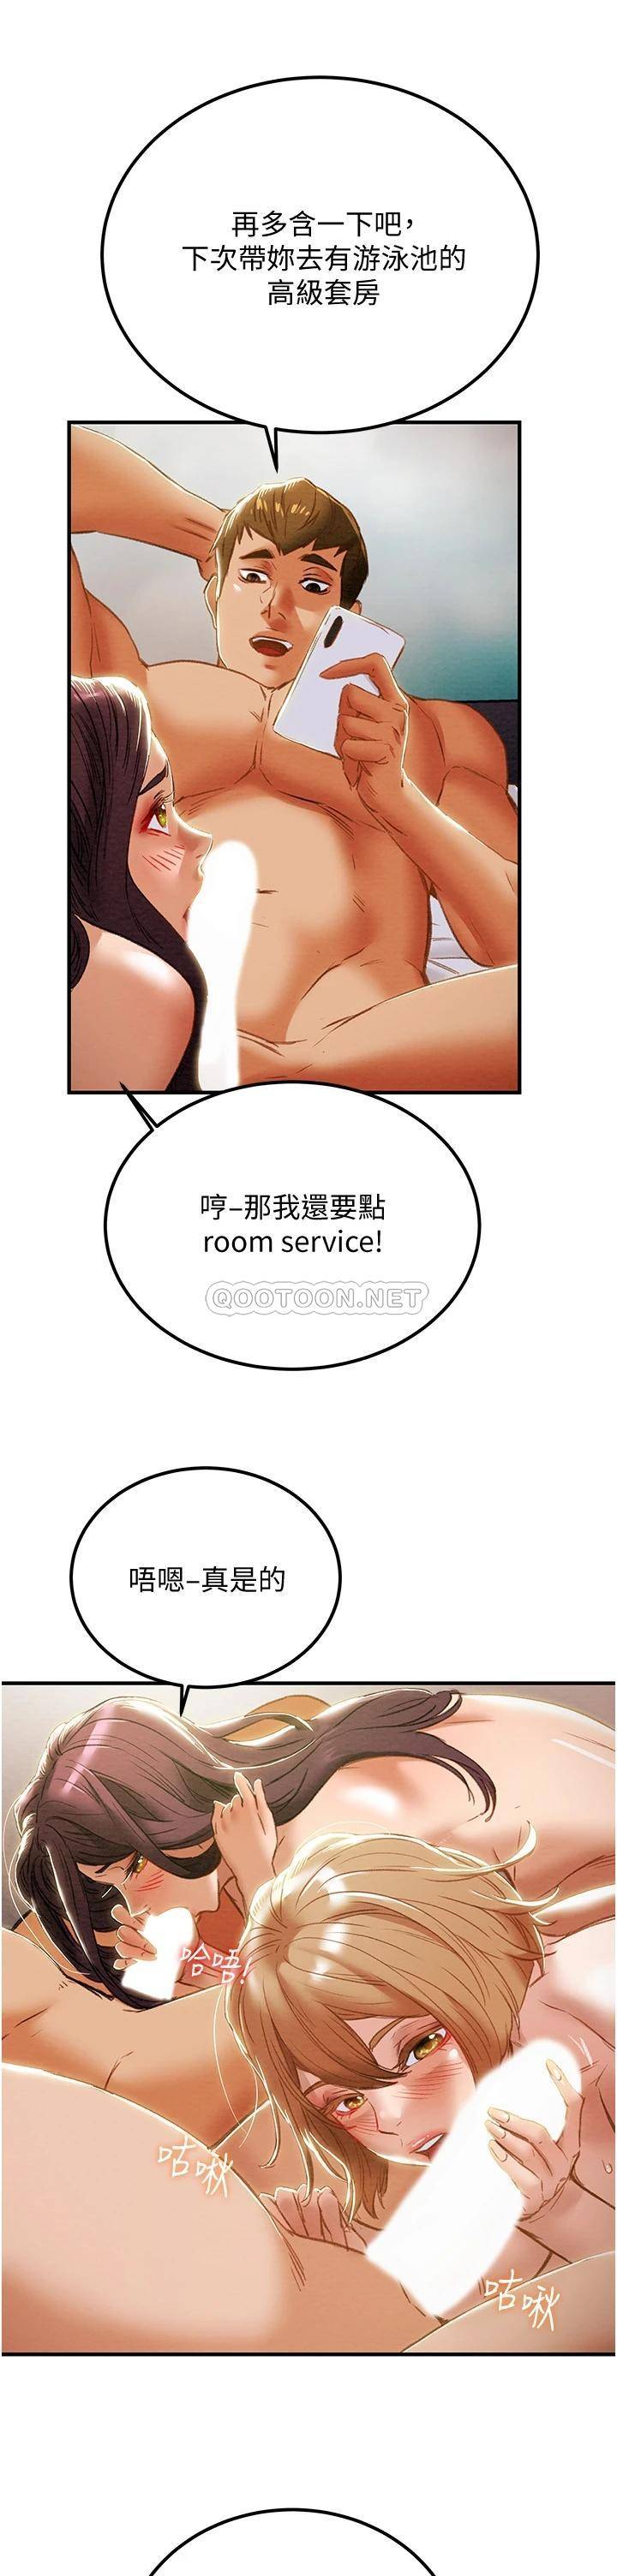 韩国污漫画 純情女攻略計劃 第58话带来新刺激的疯狂性爱 47